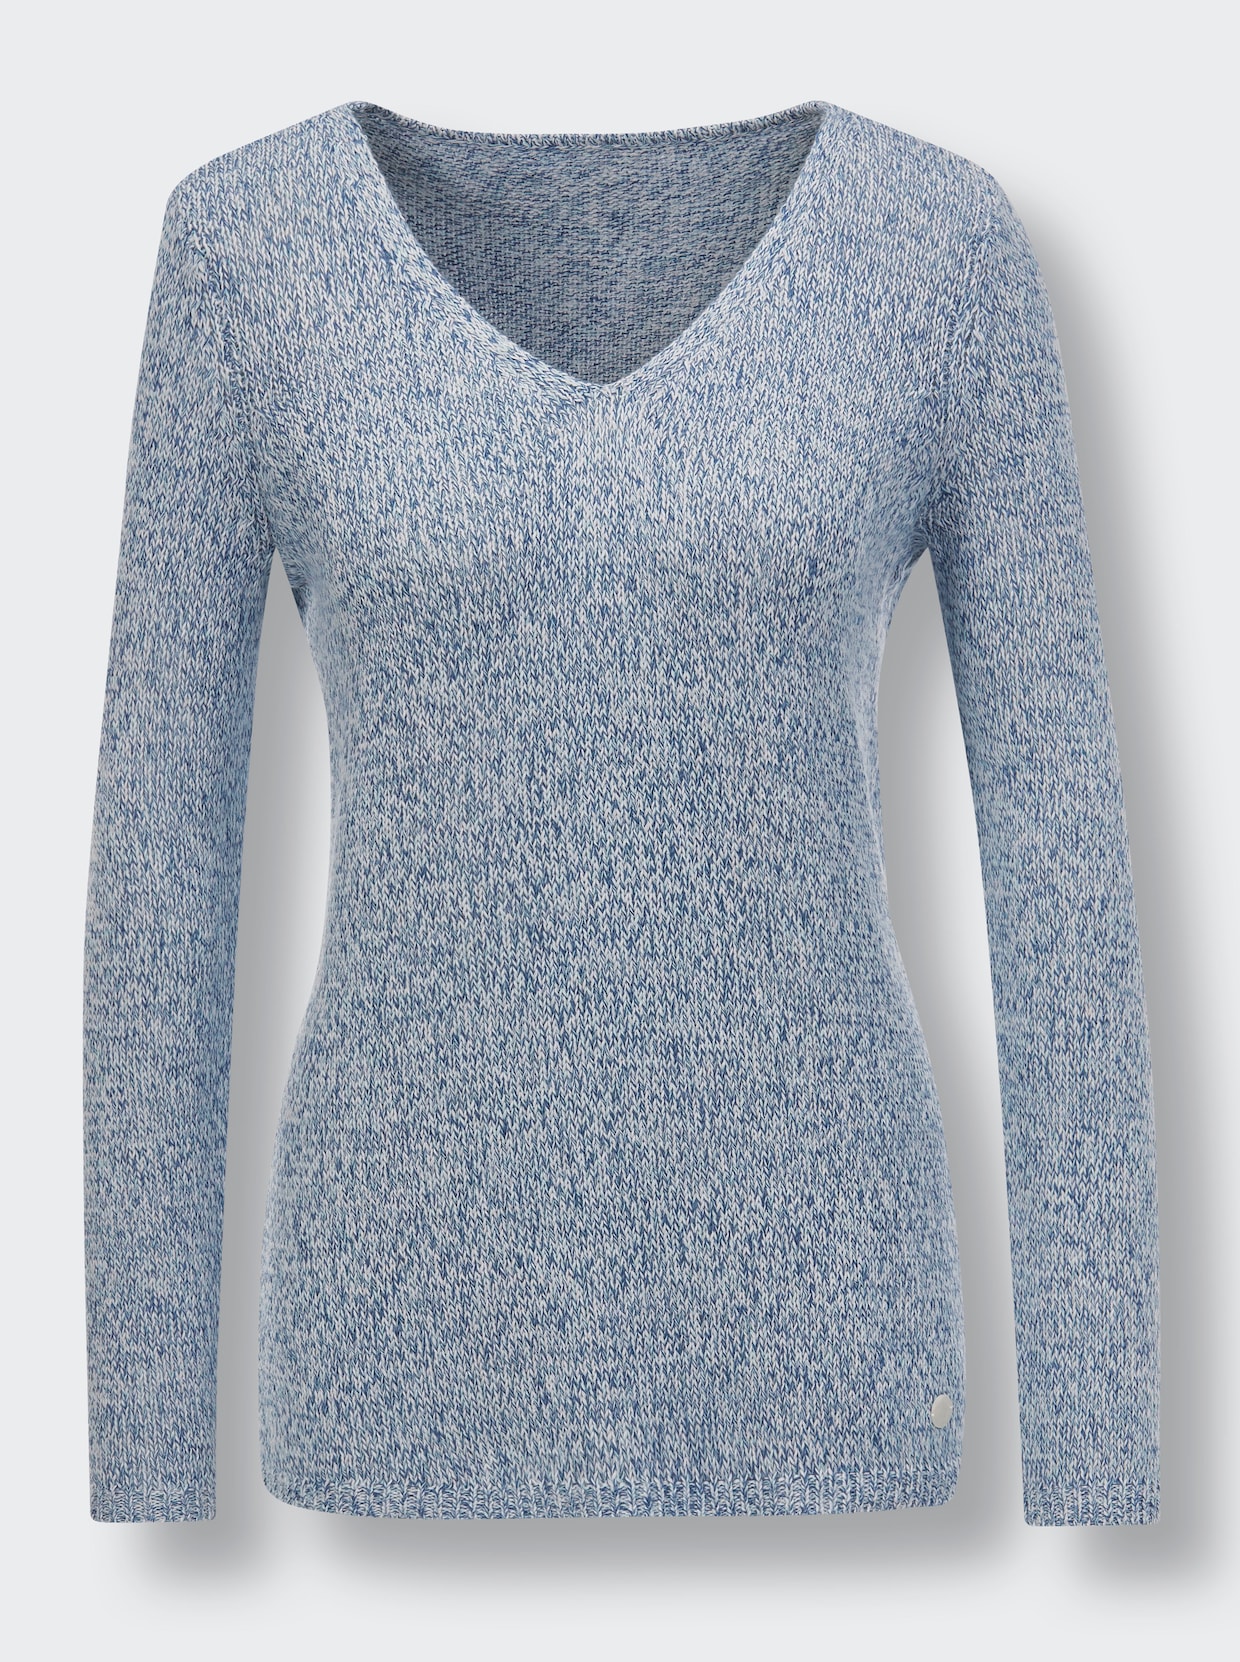 Creation L Premium Leinen-Baumwoll-Pullover - jeansblau-mint-meliert